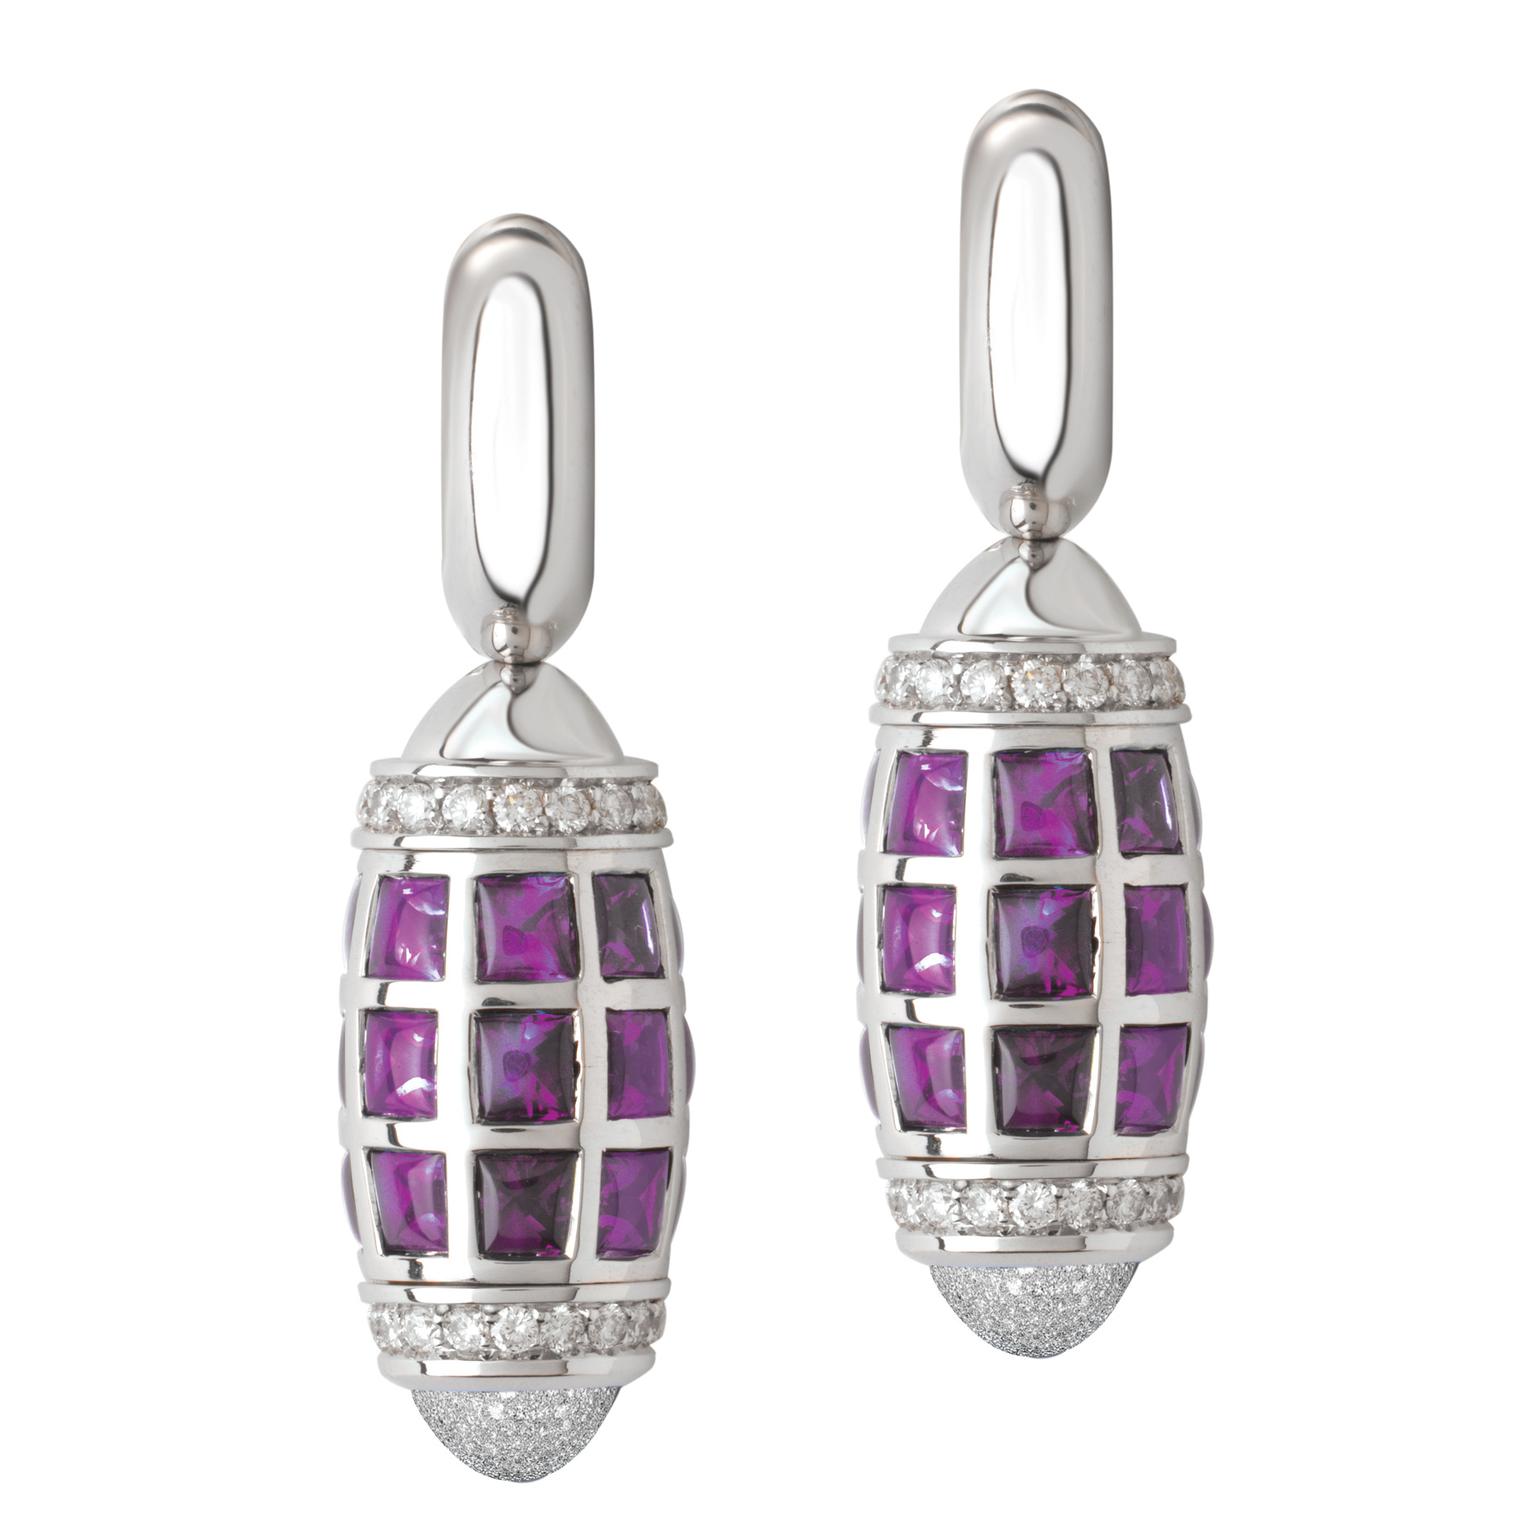 Avakian pink sapphire earrings